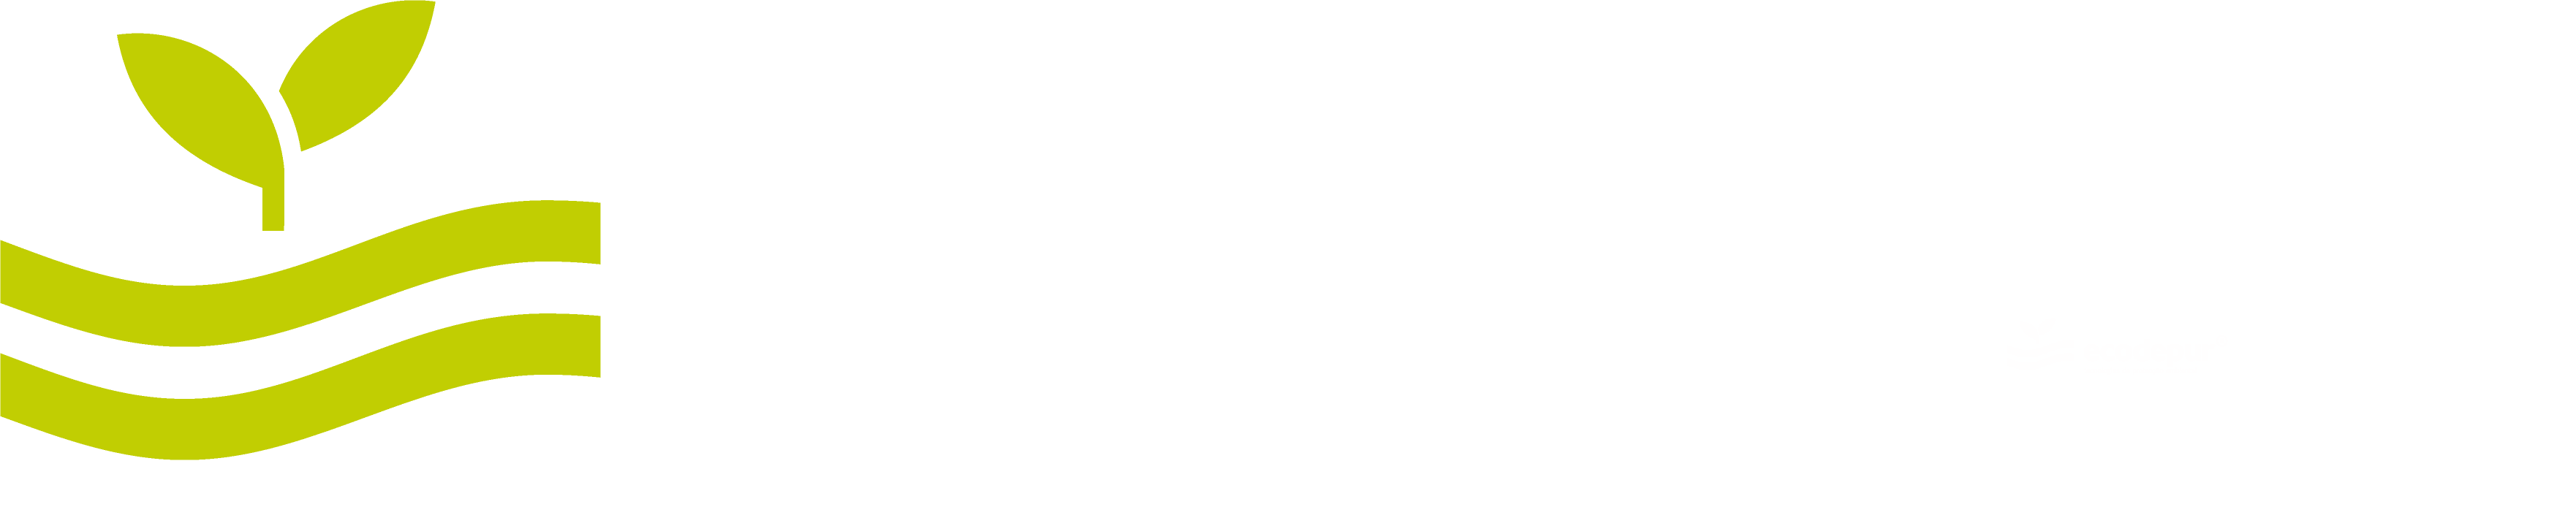 Ecodepur - Tecnologias de proteco ambiental